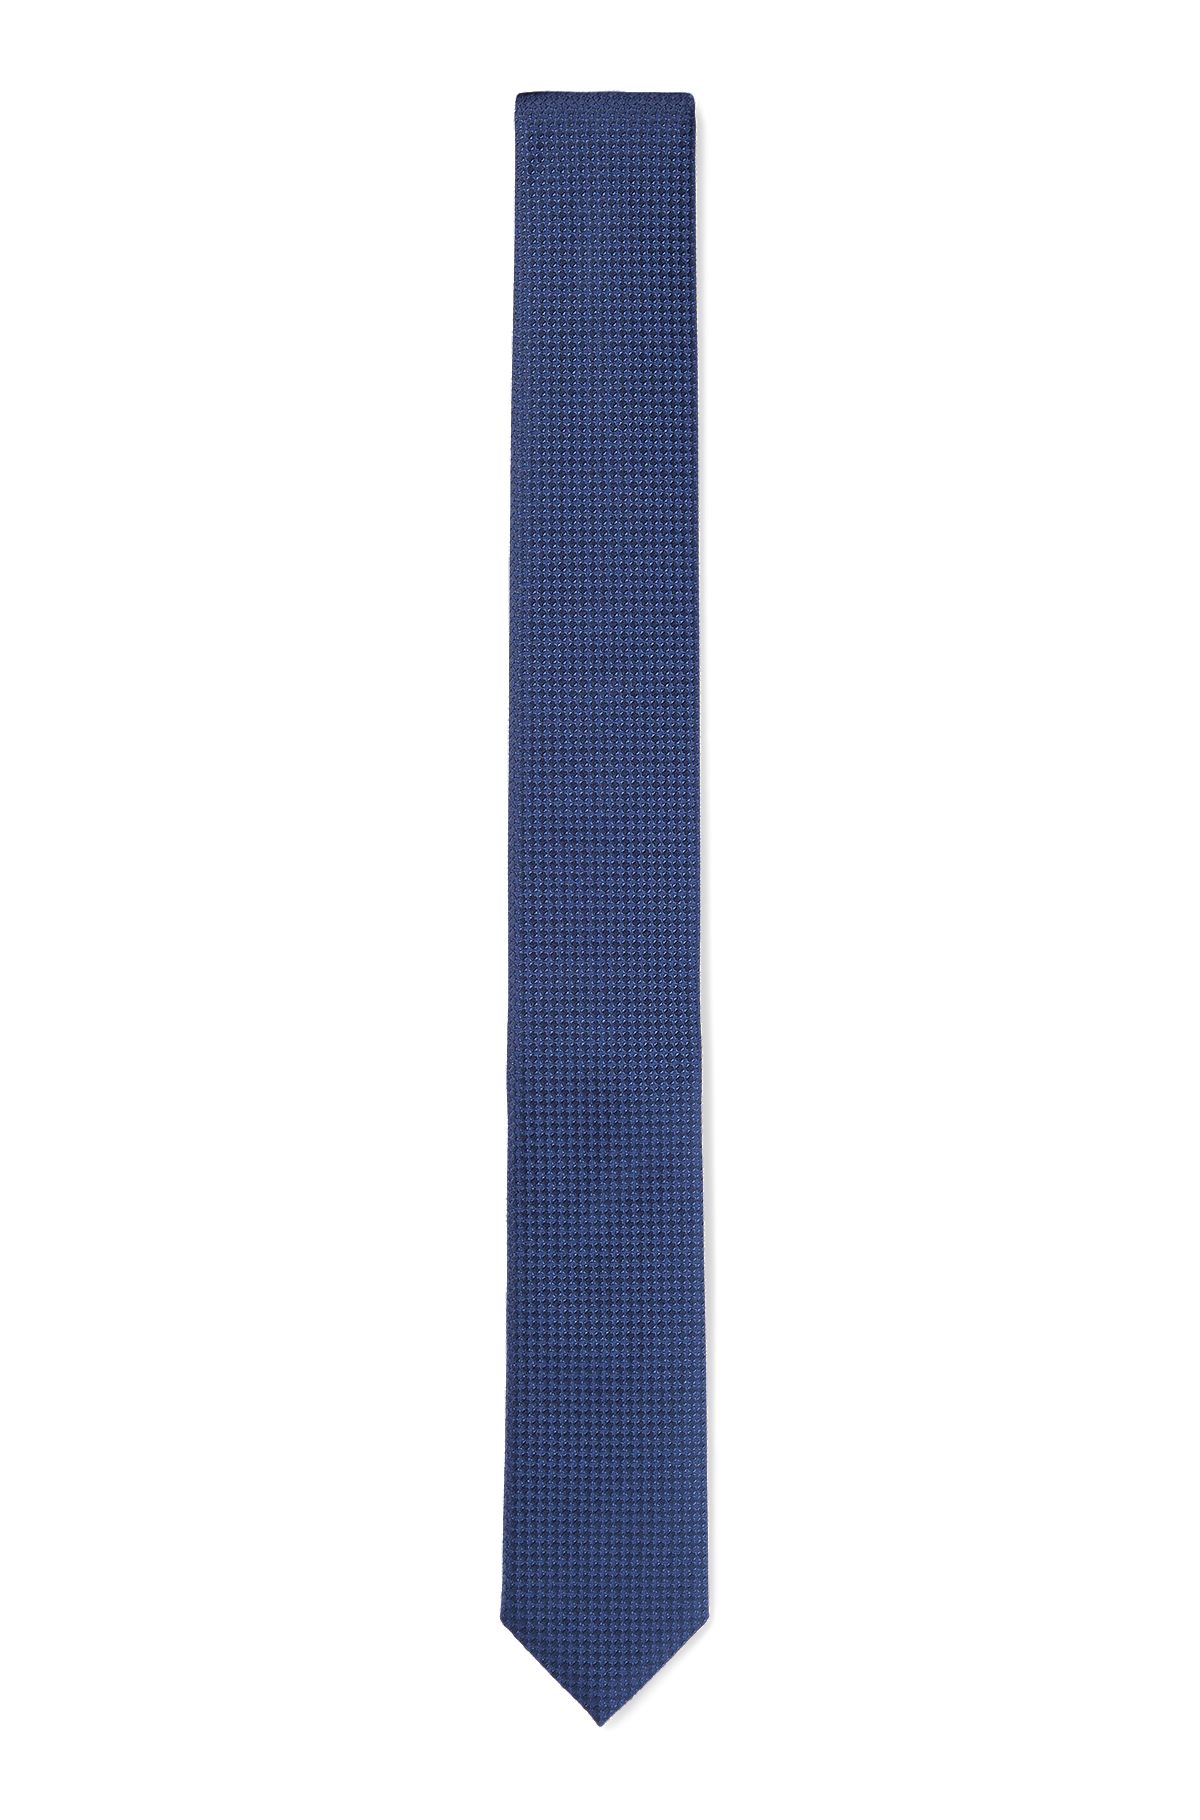 Cravate en jacquard de soie à micro motif, Bleu foncé